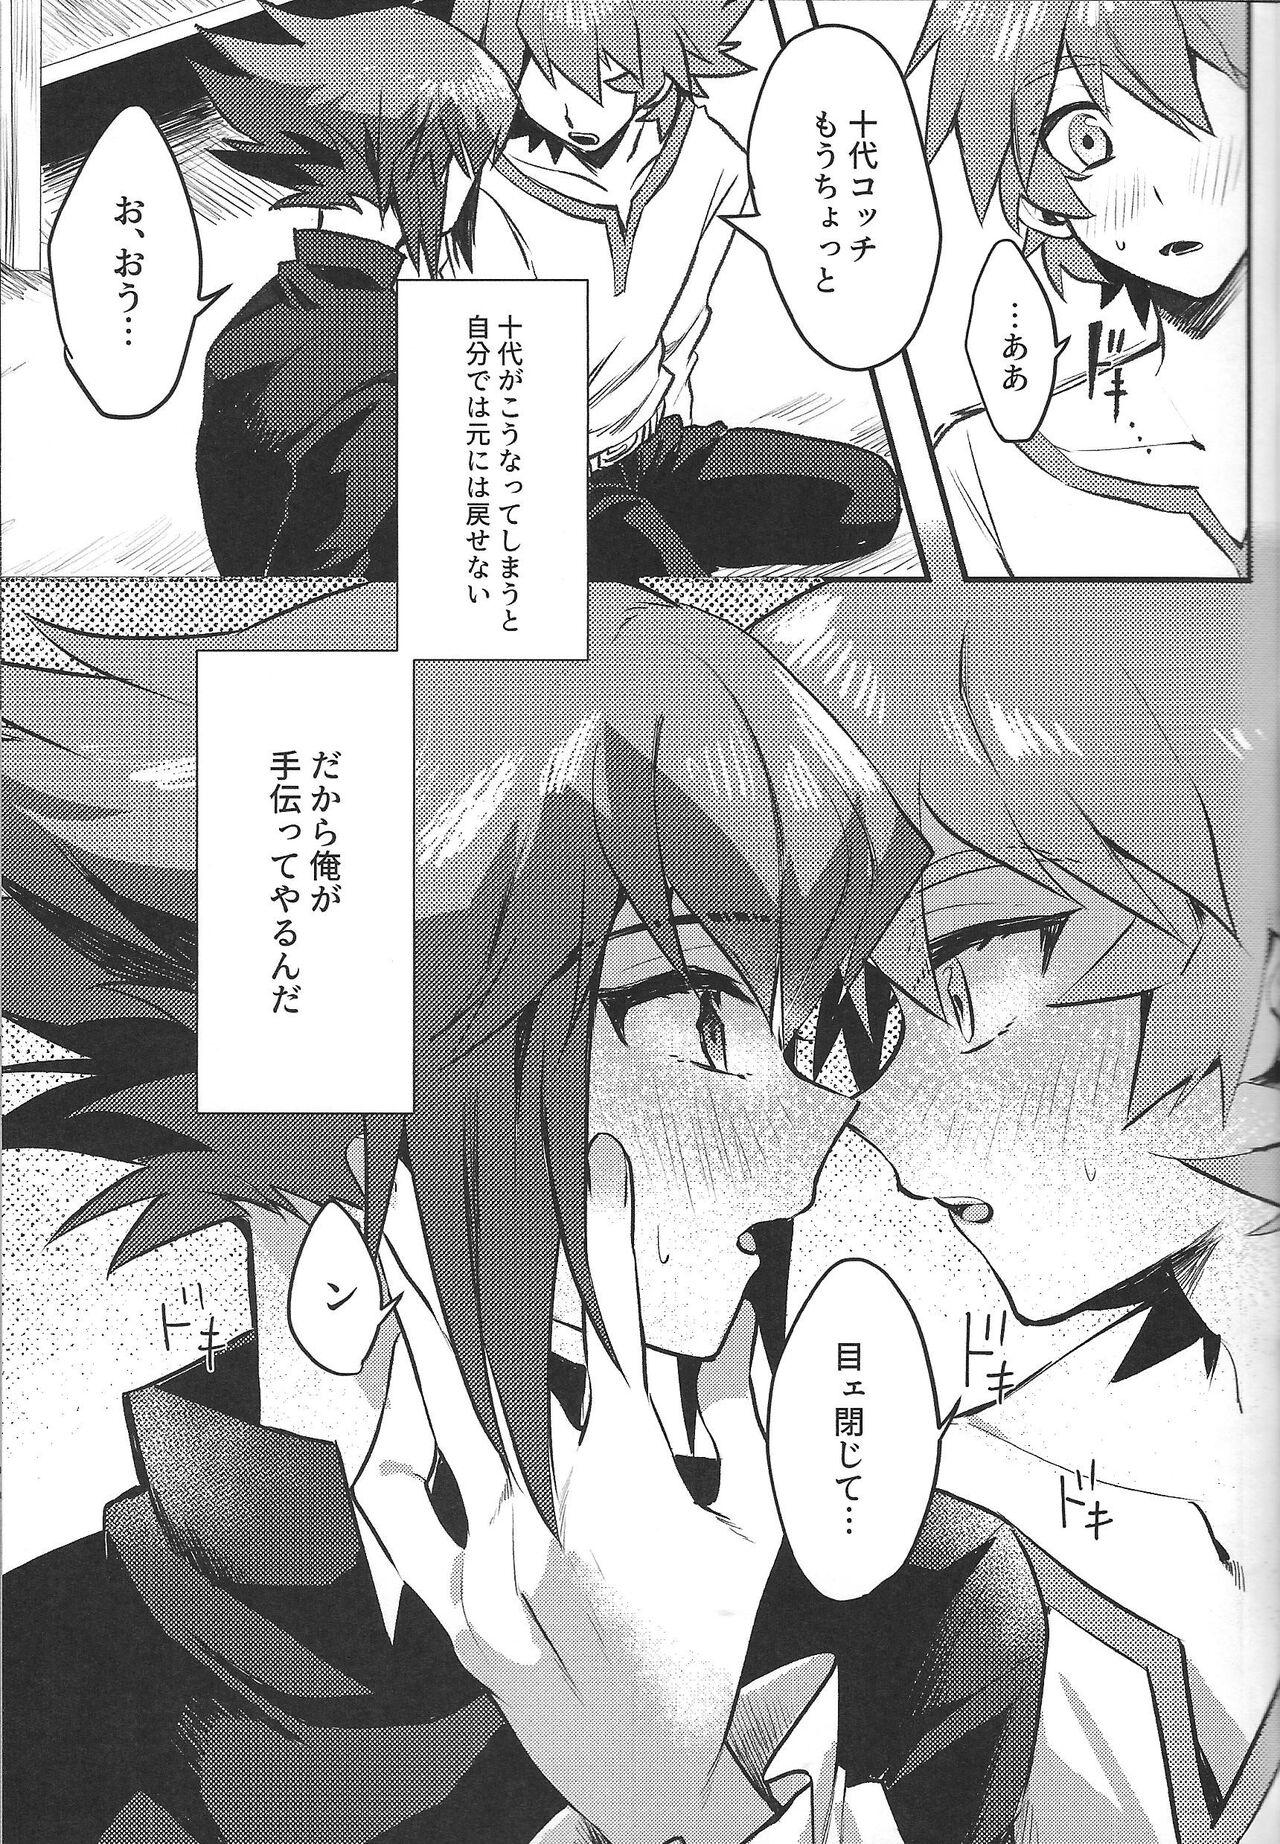 Whore Reberu 12 no akuma to yugo shite nani mo nai wake ga nai - Yu gi oh gx Kissing - Page 6